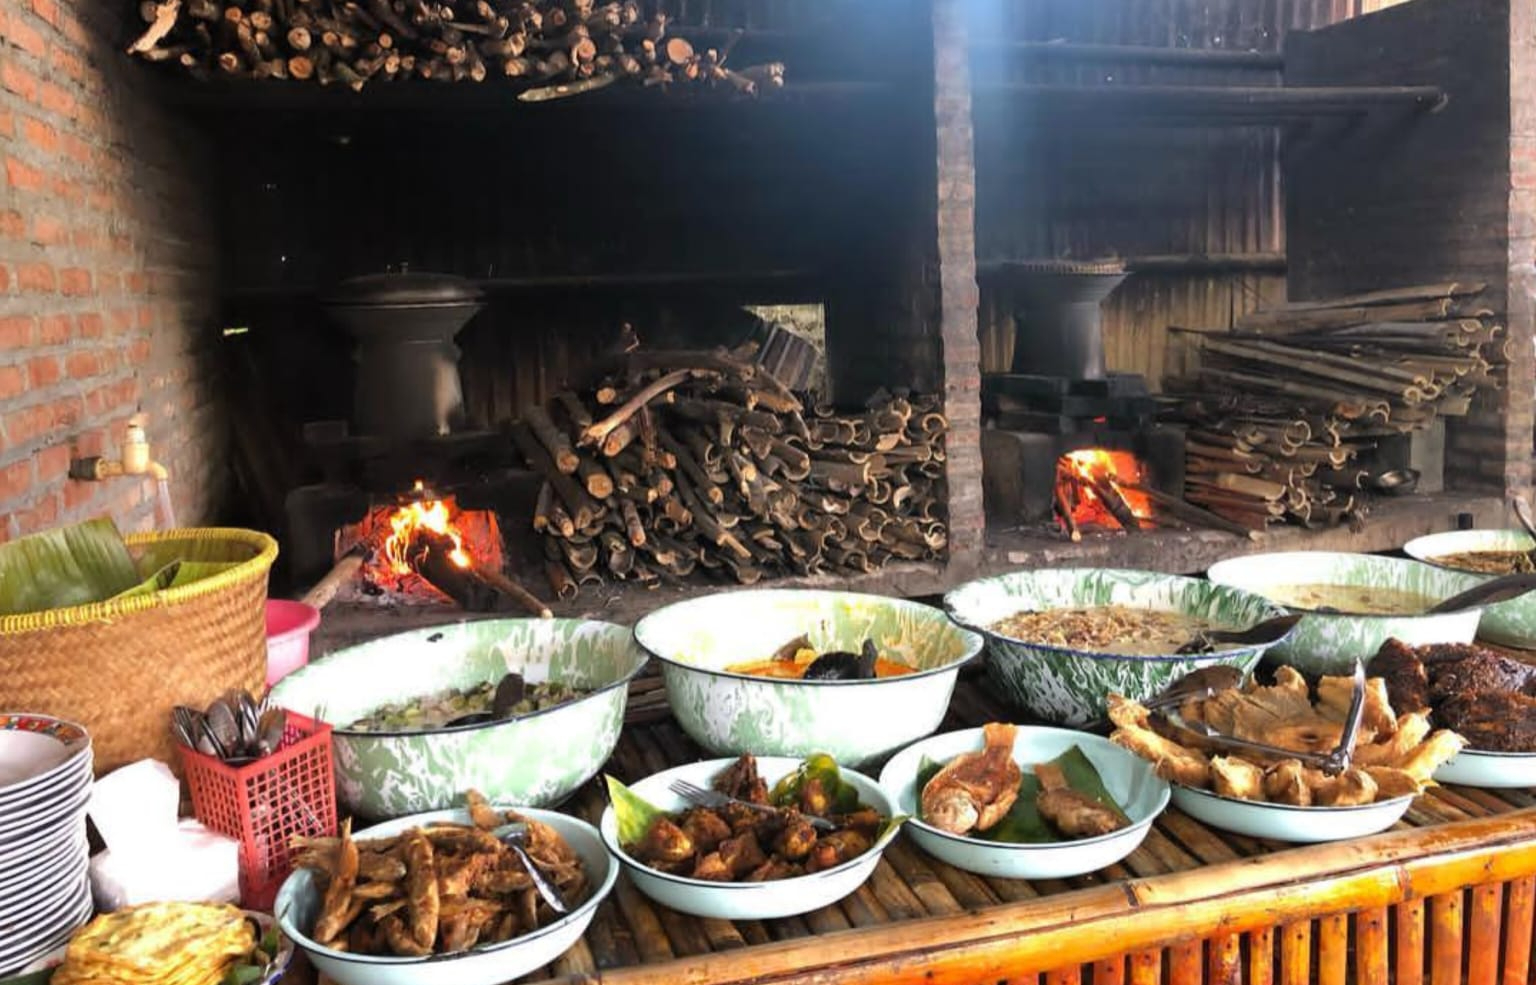 Nikmati Hidangan Khas Sunda di Rumah Makan Saung Panyawah Tasikmalaya, Murah Nggak Bikin Kantong Jebol